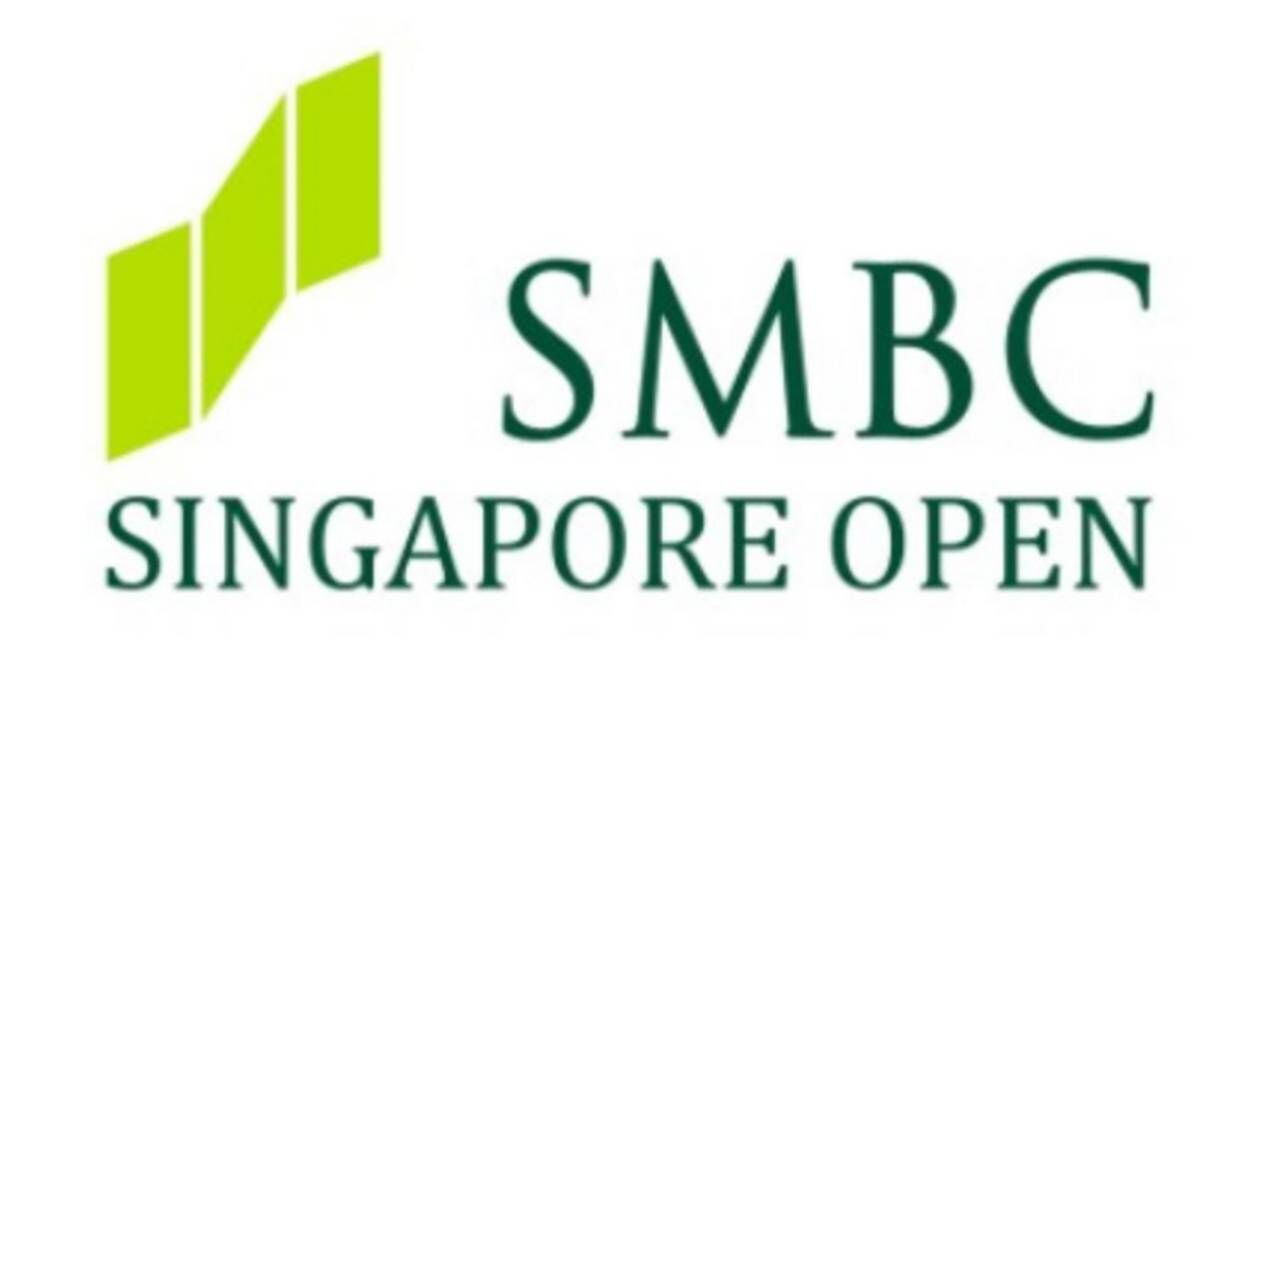 「SMBCシンガポールオープン」の開催概要変更のお知らせ